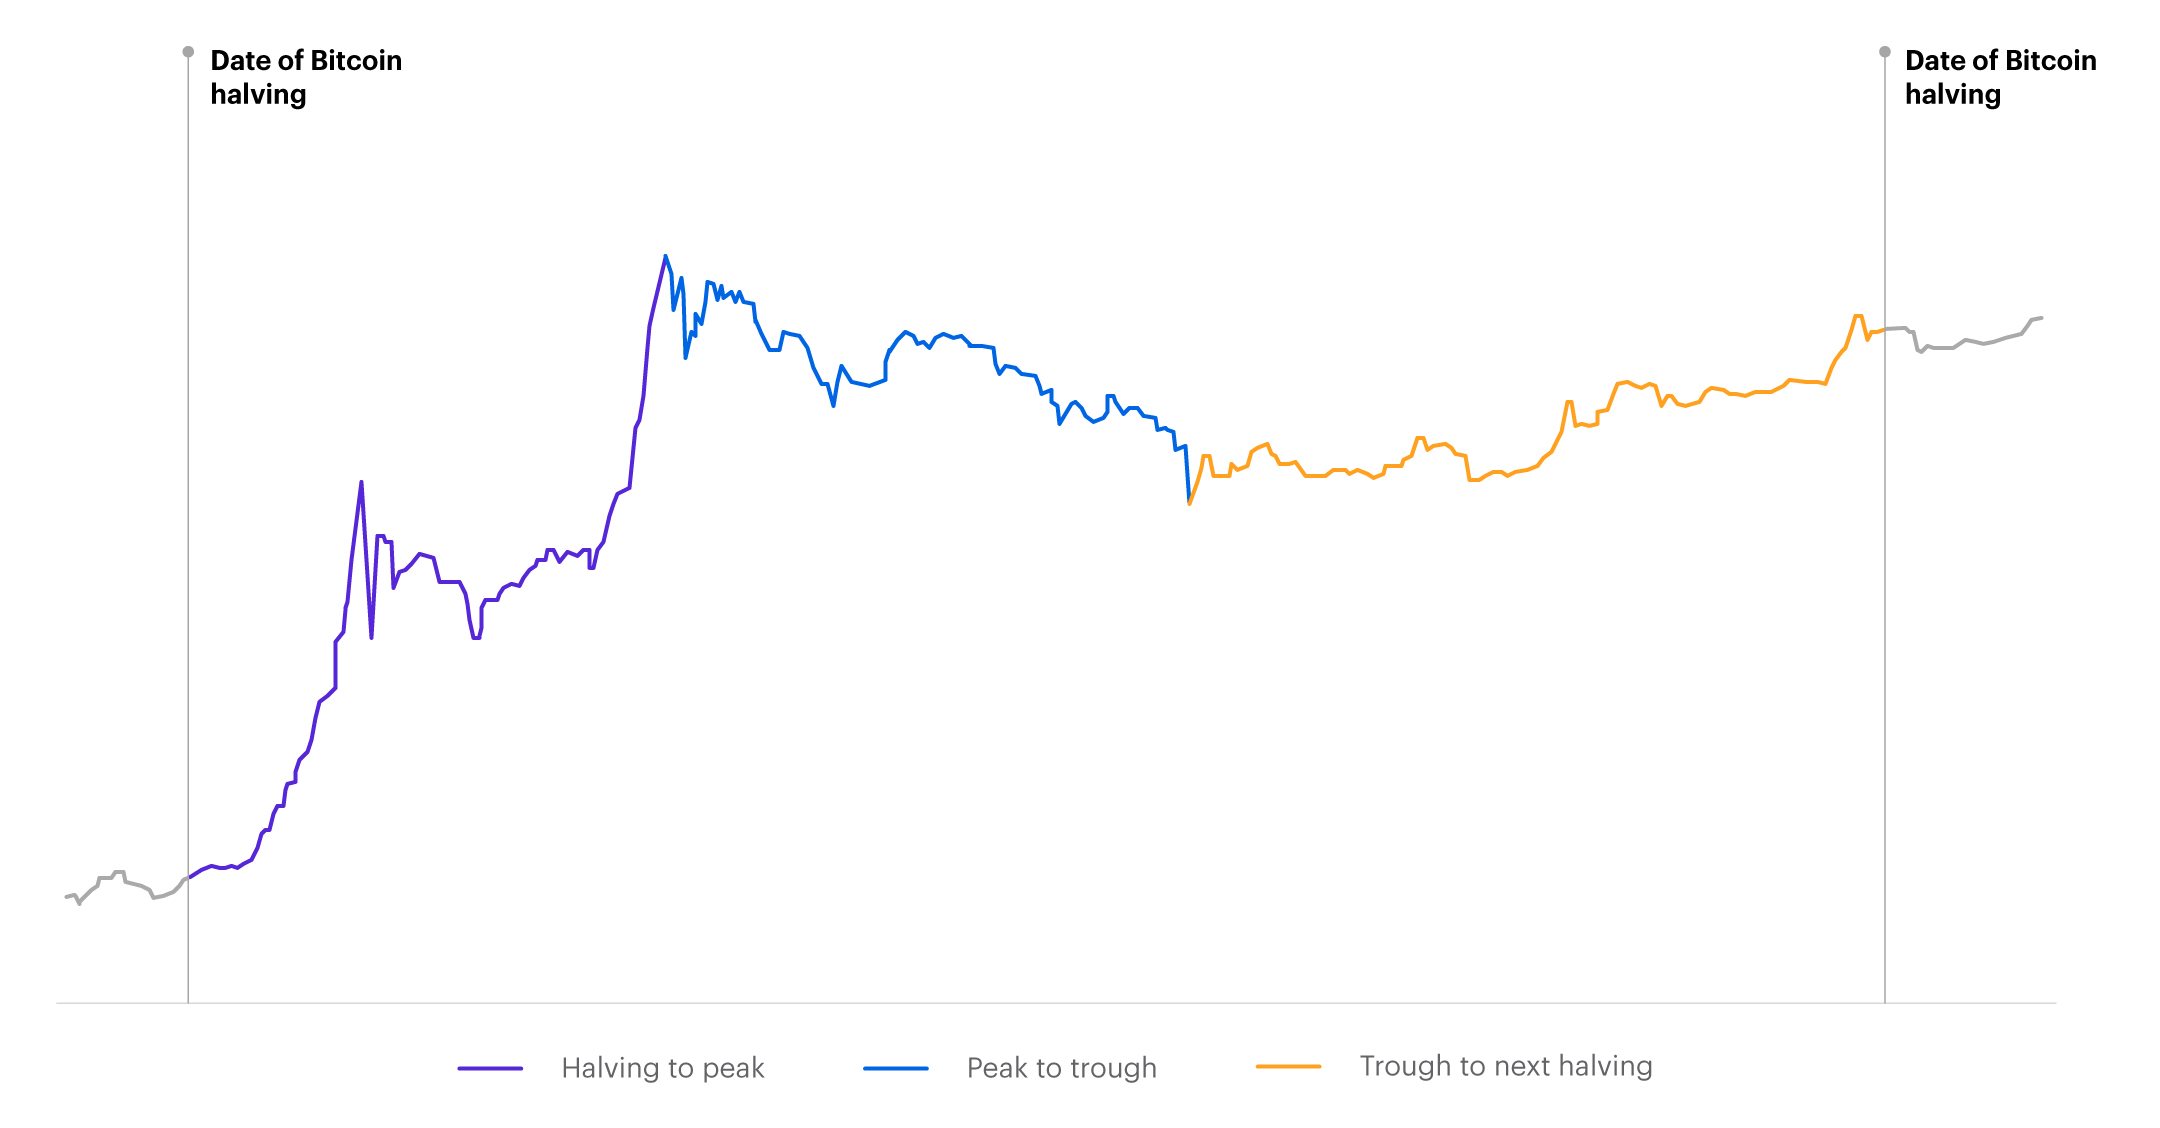 Chart displaying bitcoin price behavior around halving dates